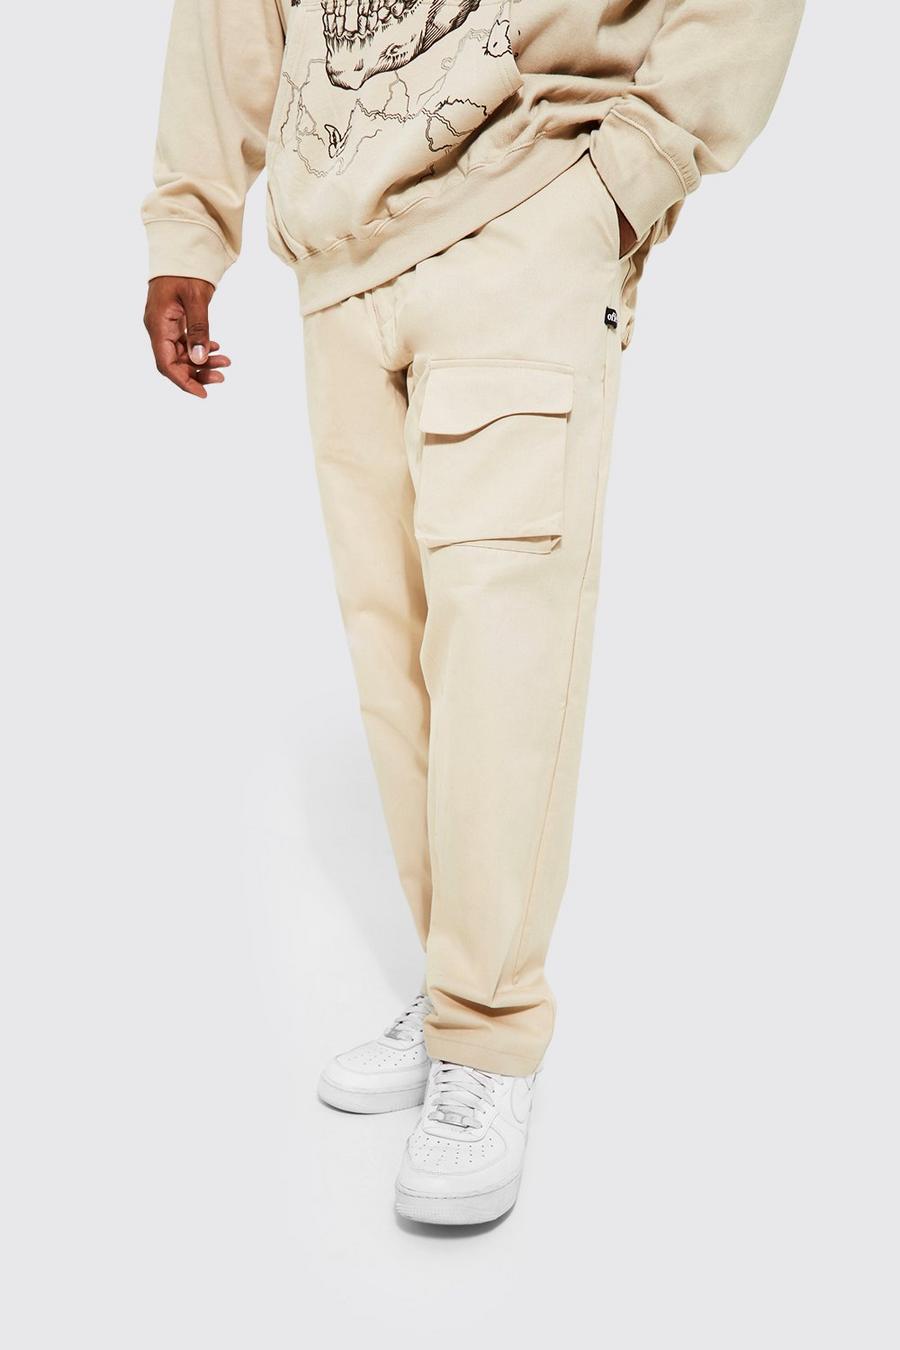 Pantaloni Plu Size Slim Fit con tasche curve, Ecru bianco